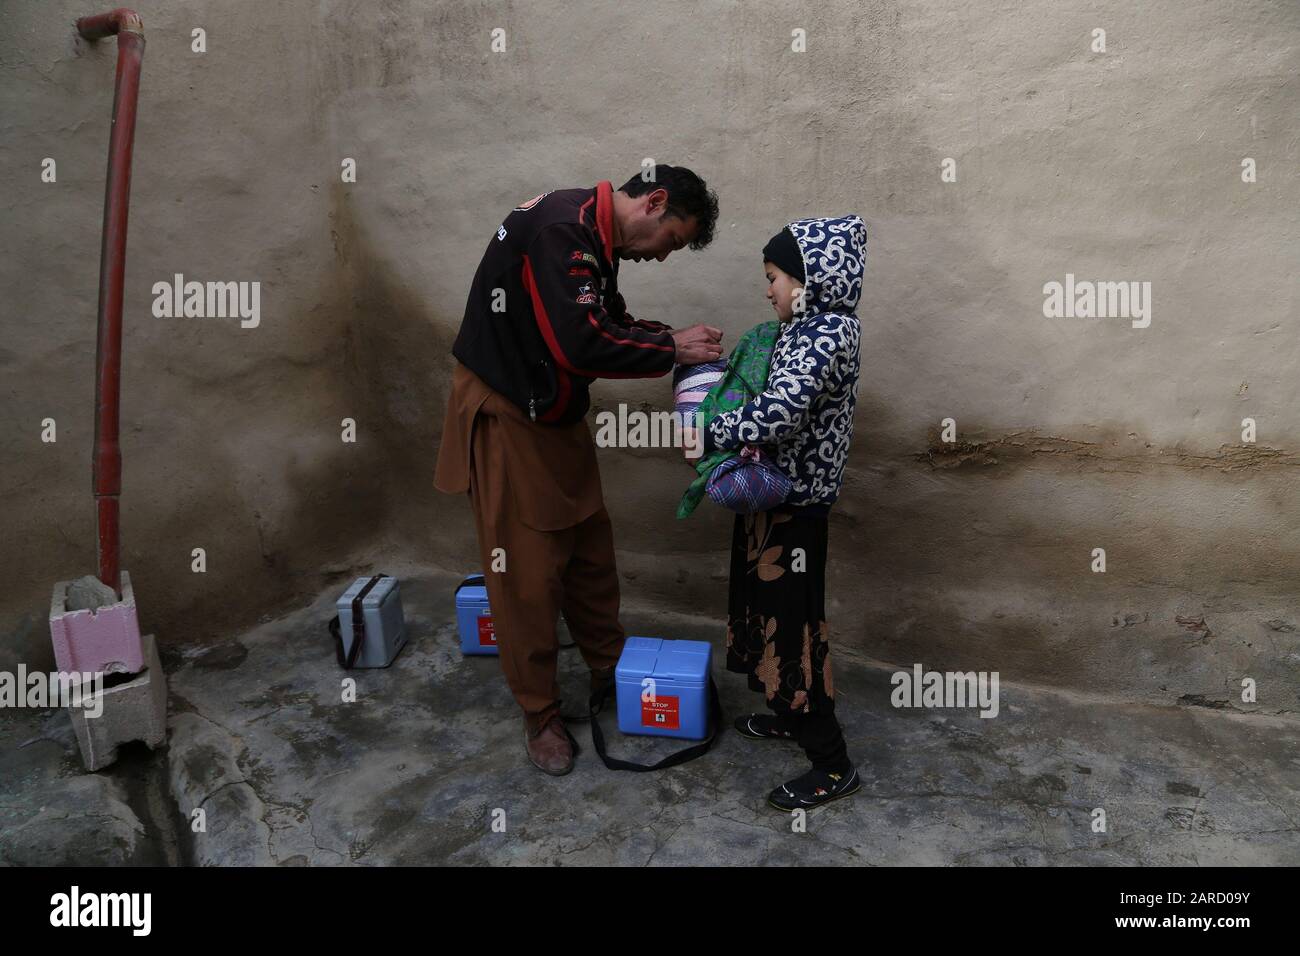 (200127) -- GHAZNI (AFGANISTÁN), 27 de enero de 2020 (Xinhua) -- un trabajador de salud le da dosis de vacunación contra la polio a un niño durante una campaña de vacunación en la provincia de Ghazni, Afganistán, el 27 de enero de 2020. El Ministerio de Salud Pública afgano lanzó una campaña nacional el lunes para dar dosis de vacunación contra la polio a 9.1 millones de niños menores de cinco años, informó el ministerio en un comunicado. (Foto De Sayed Mominzadah/Xinhua) Foto de stock